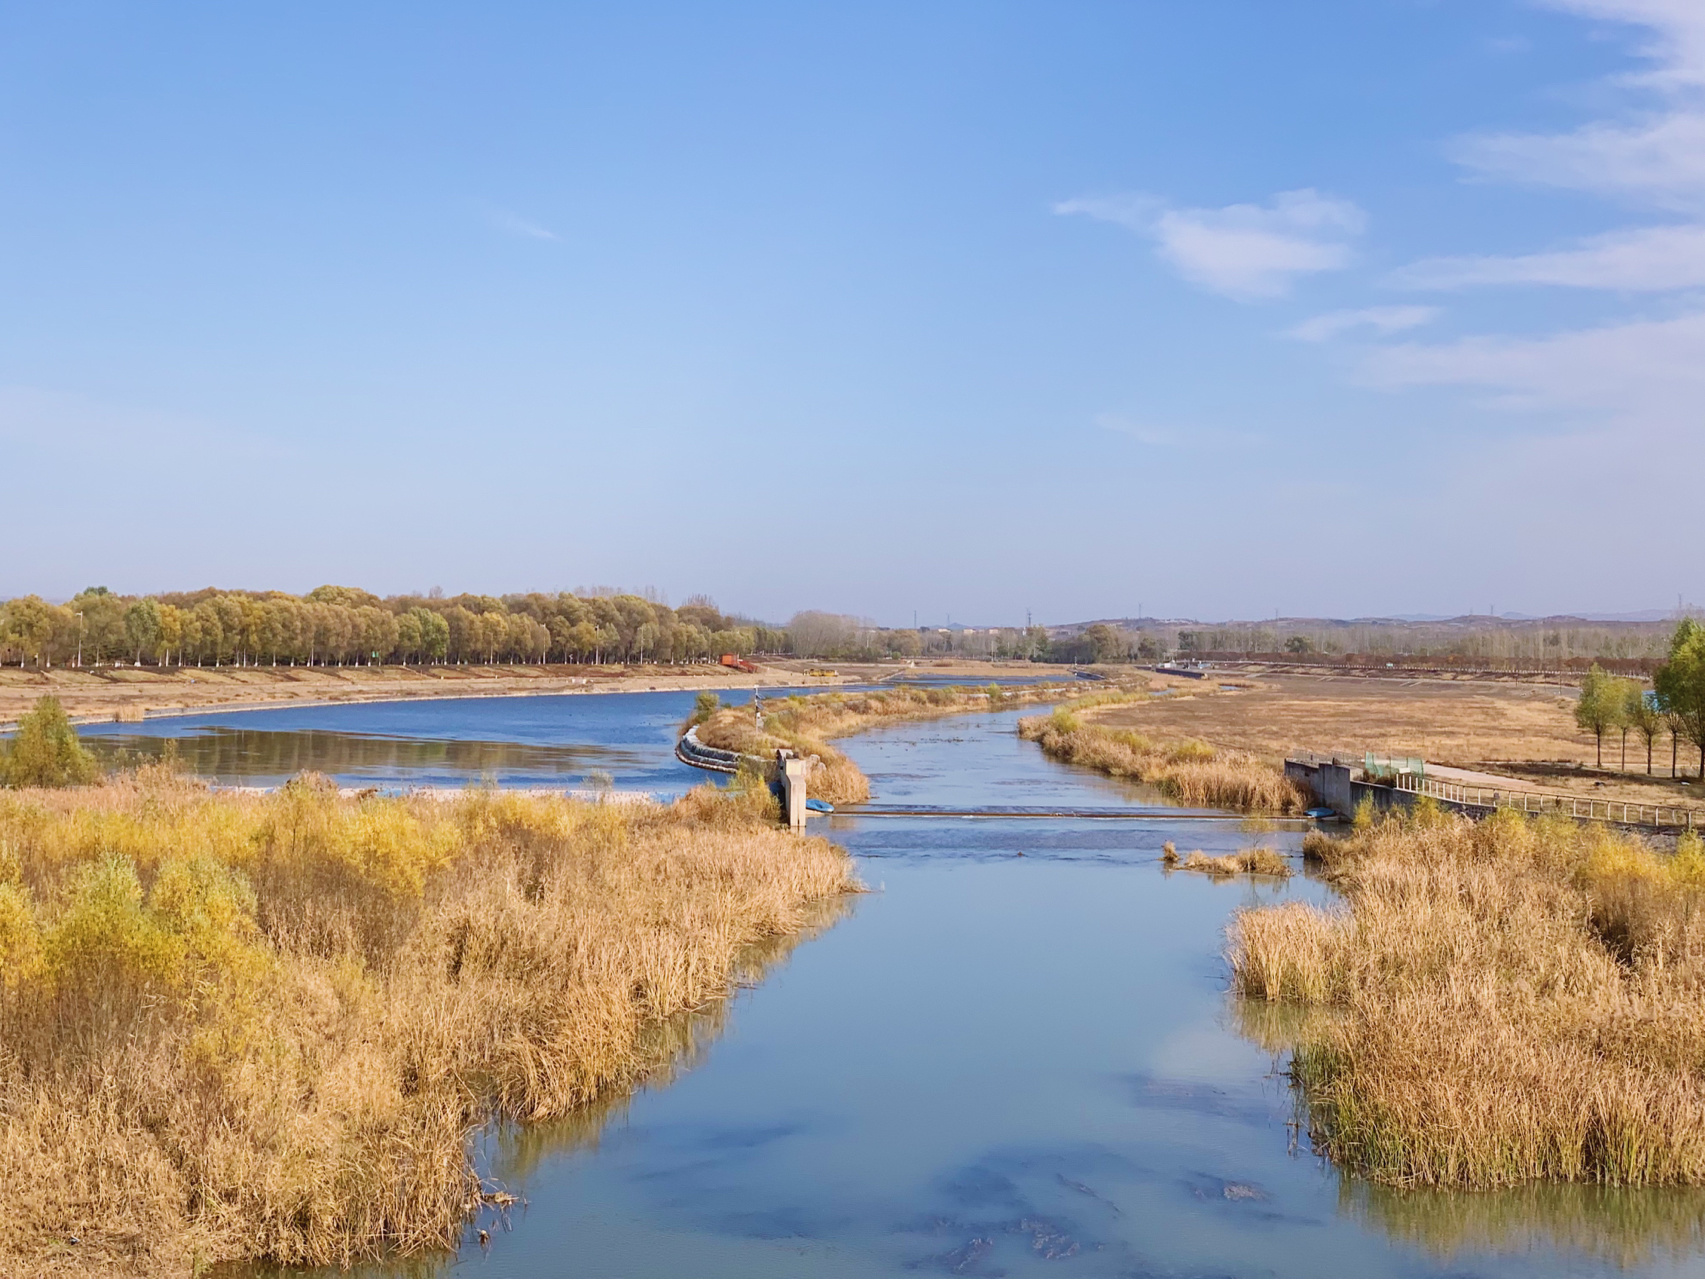 晋中 61 潇河湿地公园 位于晋中市榆次区,公园总面积很大,大致可以